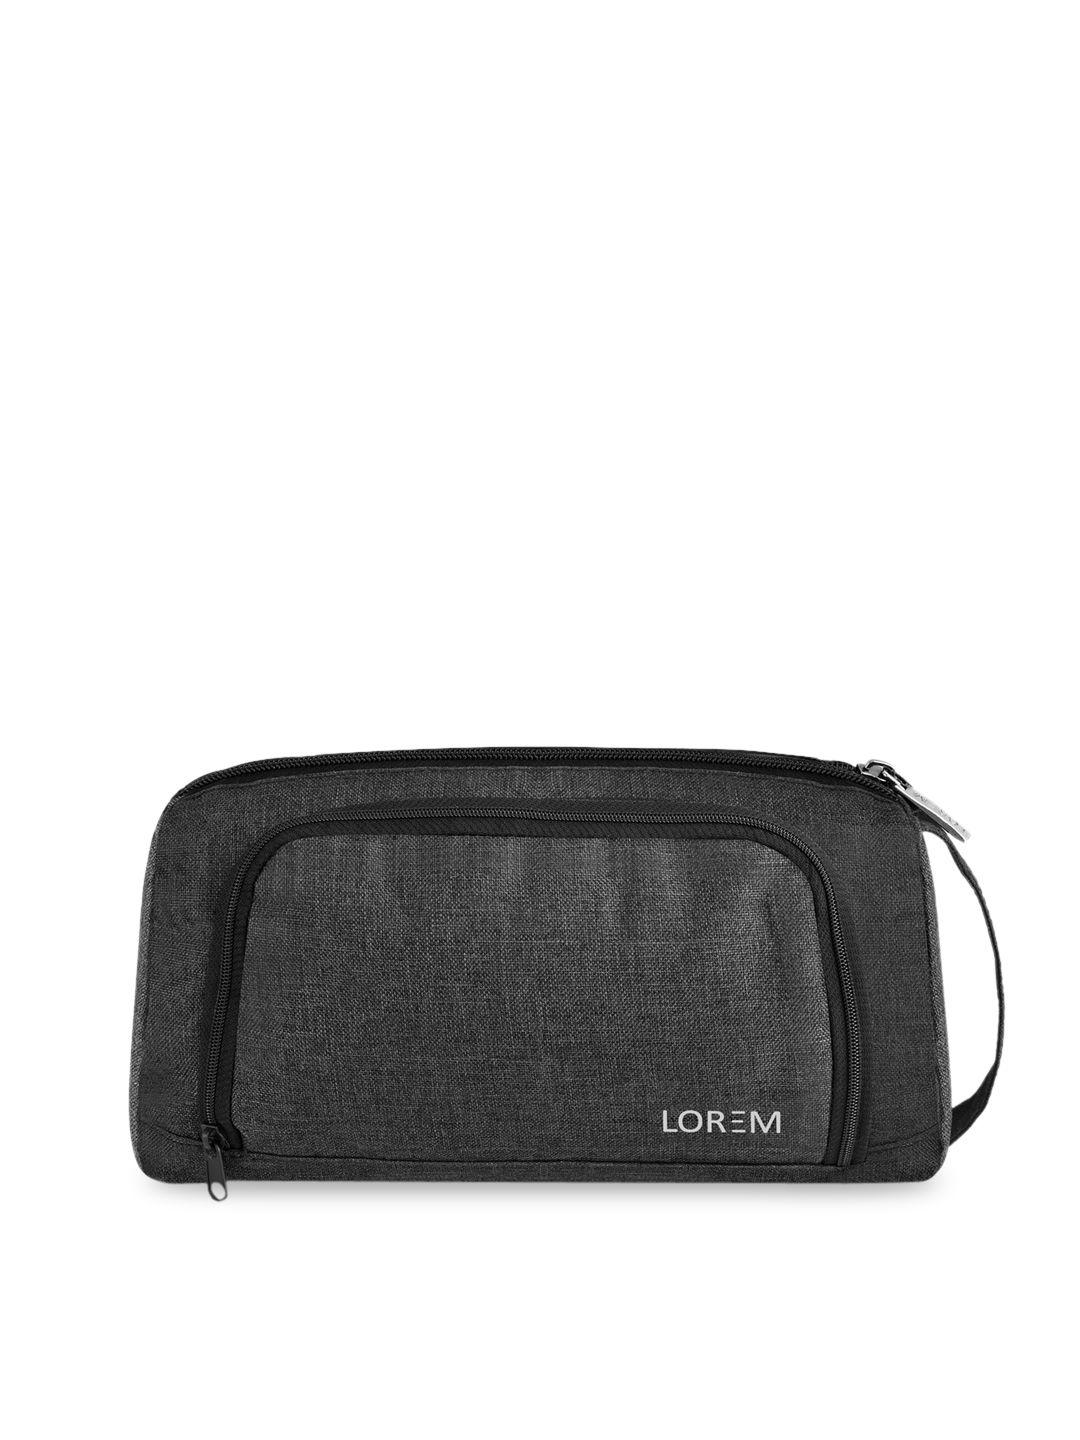 lorem charcoal solid makeup pouch